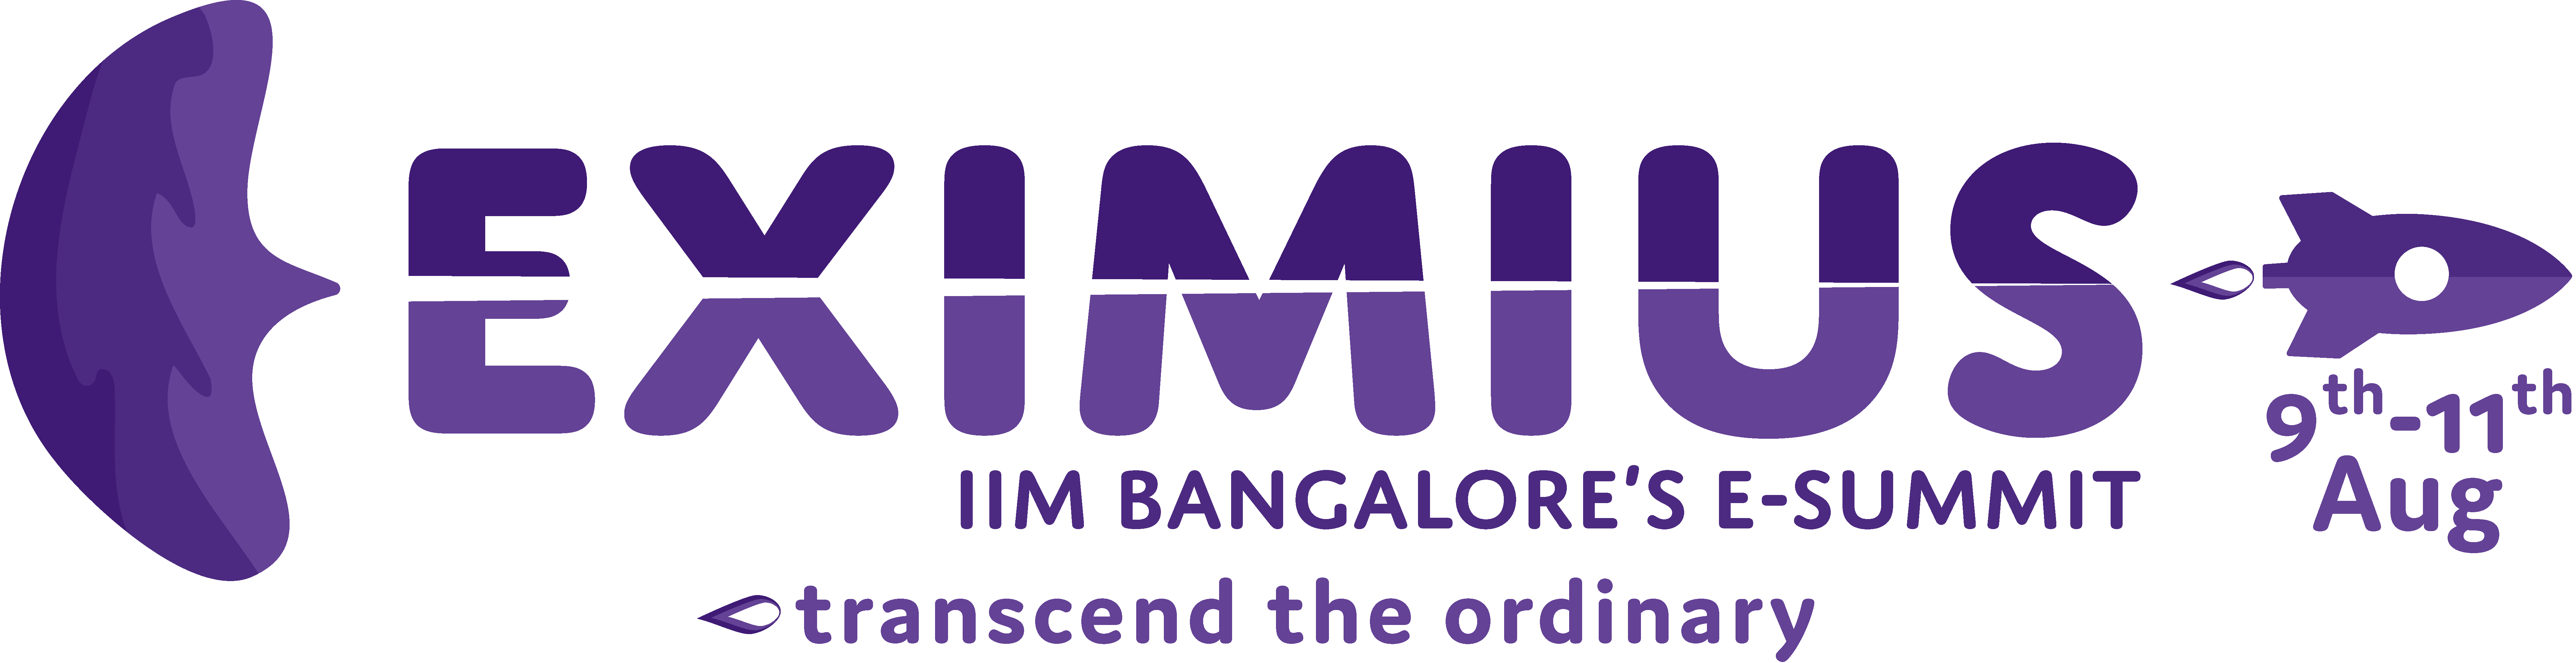 Eximius 2019 - IIM Bangalore's Entrepreneurship Summit